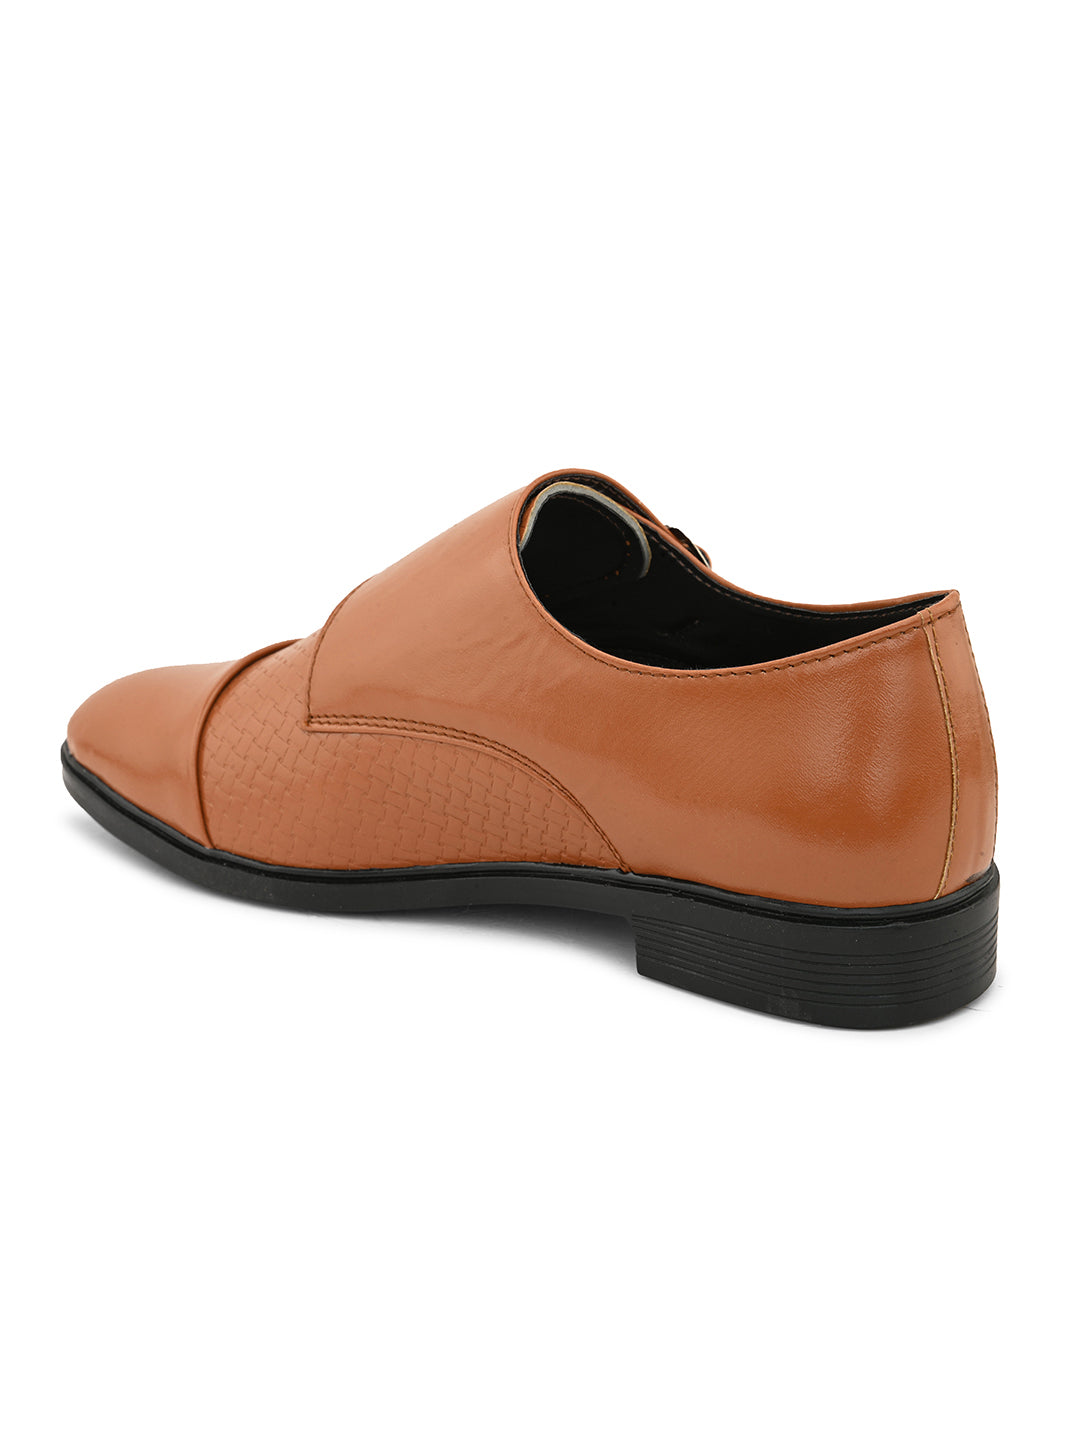 Woakers Mens Comfort Shoes  HR-MUKESAN-TAN